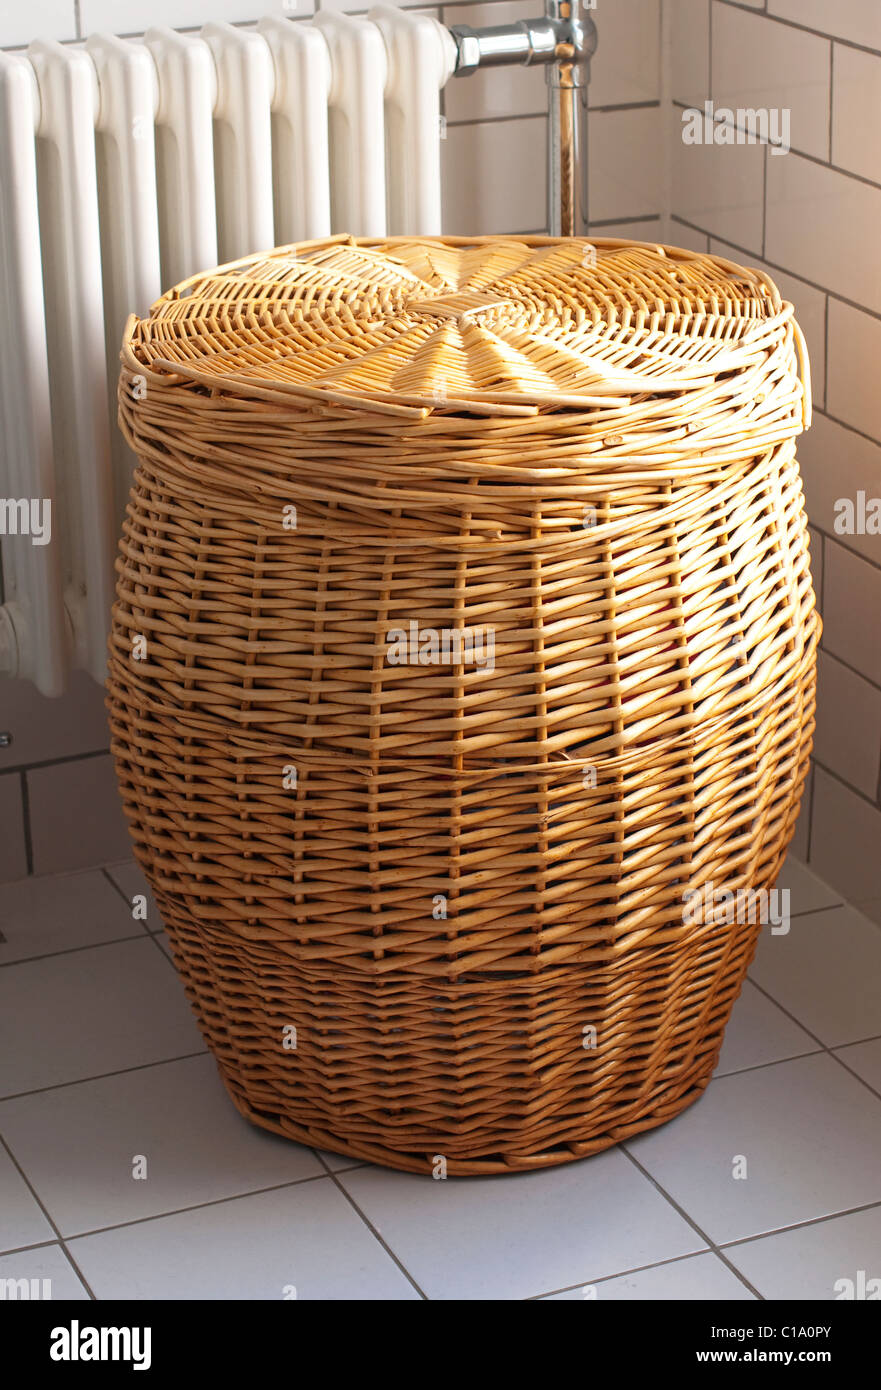 ein Weidenkorb Wäsche in ein gefliestes Badezimmer Stockfotografie - Alamy